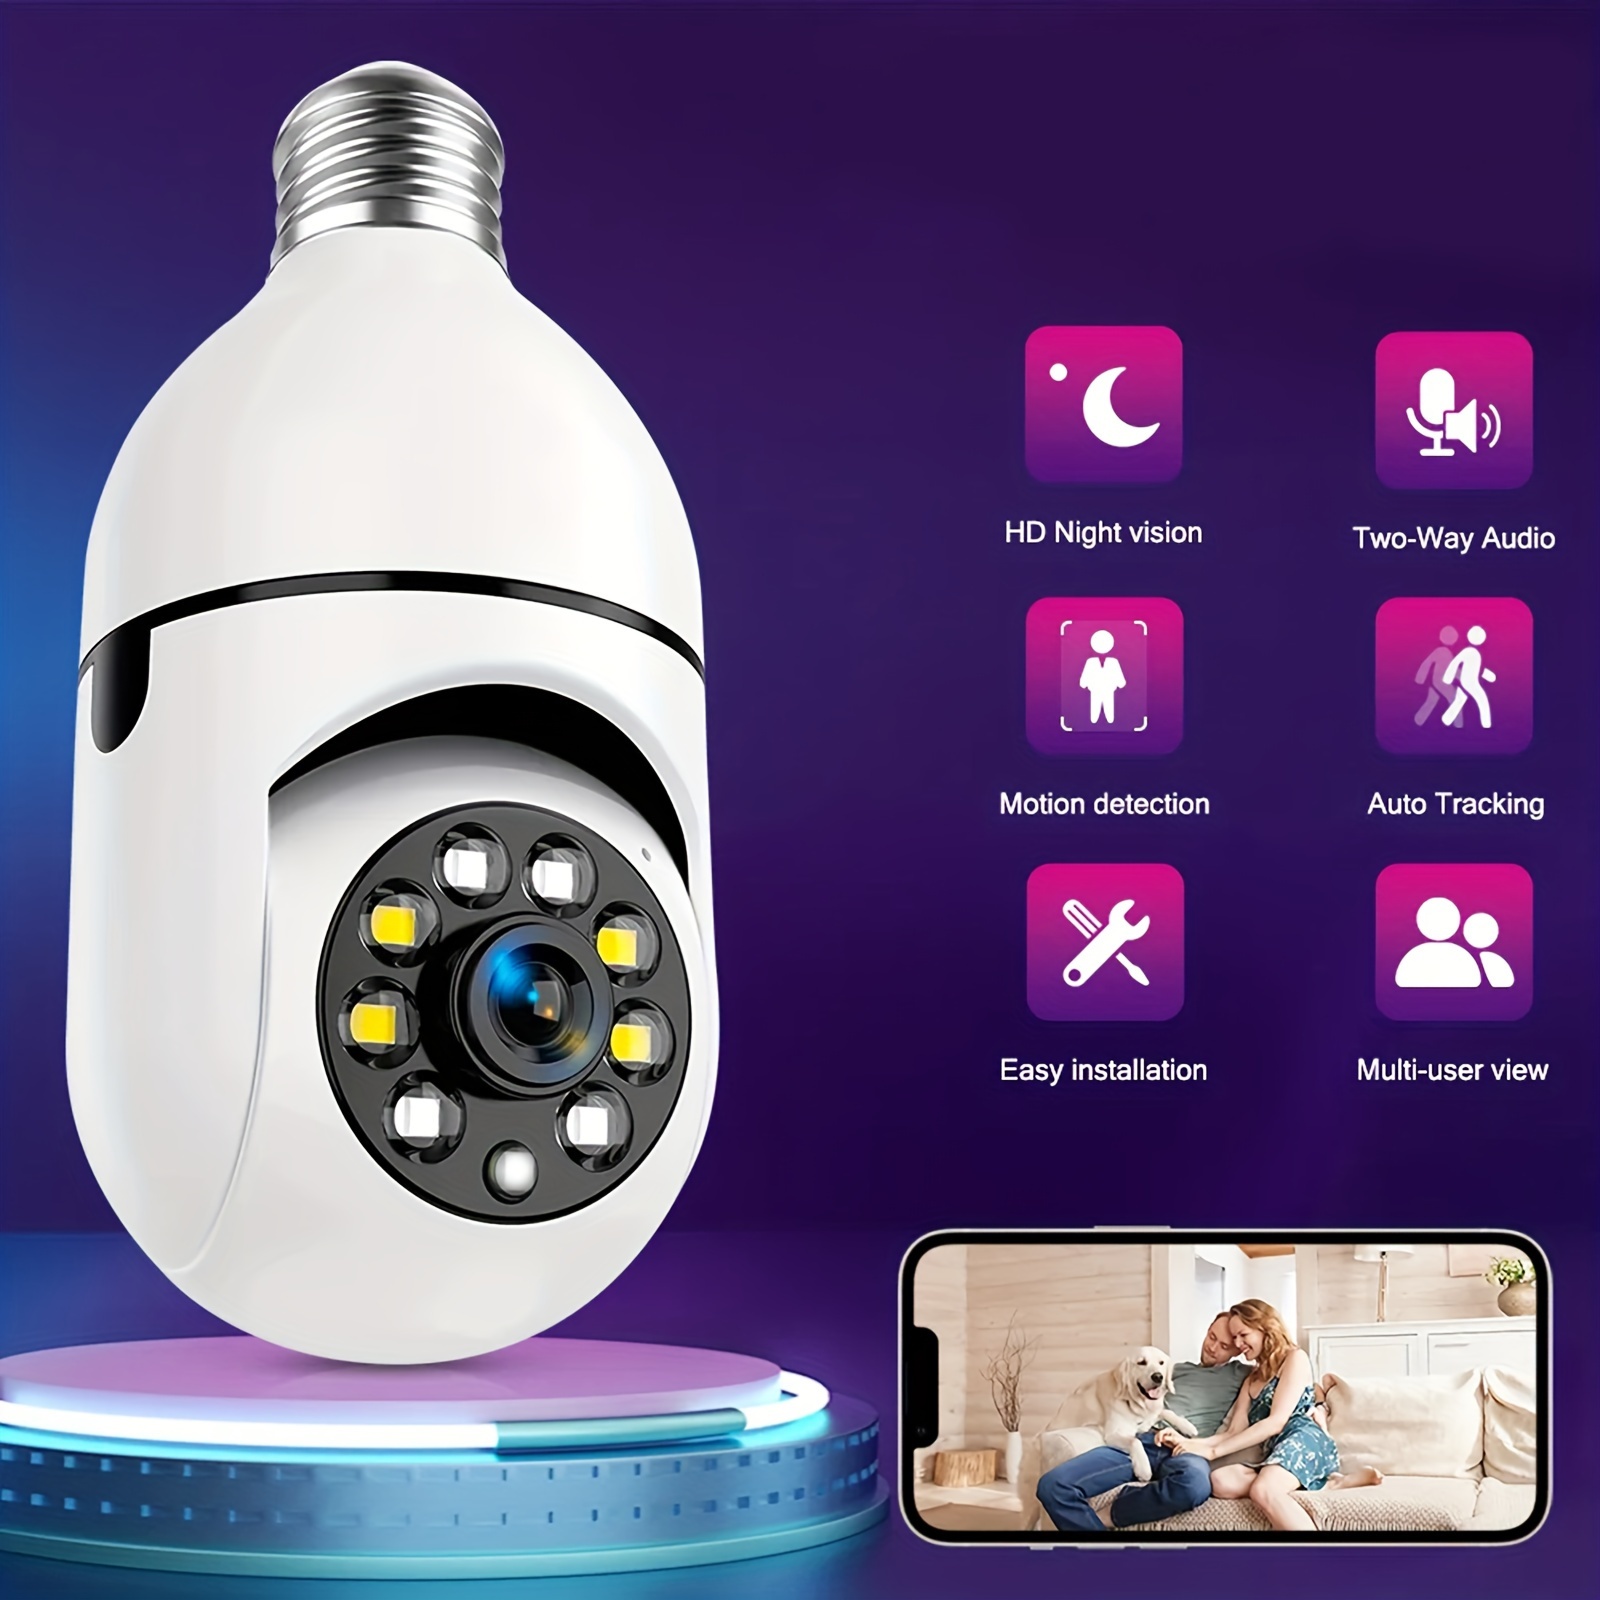 Caméra de surveillance GENERIQUE Ampoule caméra ip wifi hd 1080p